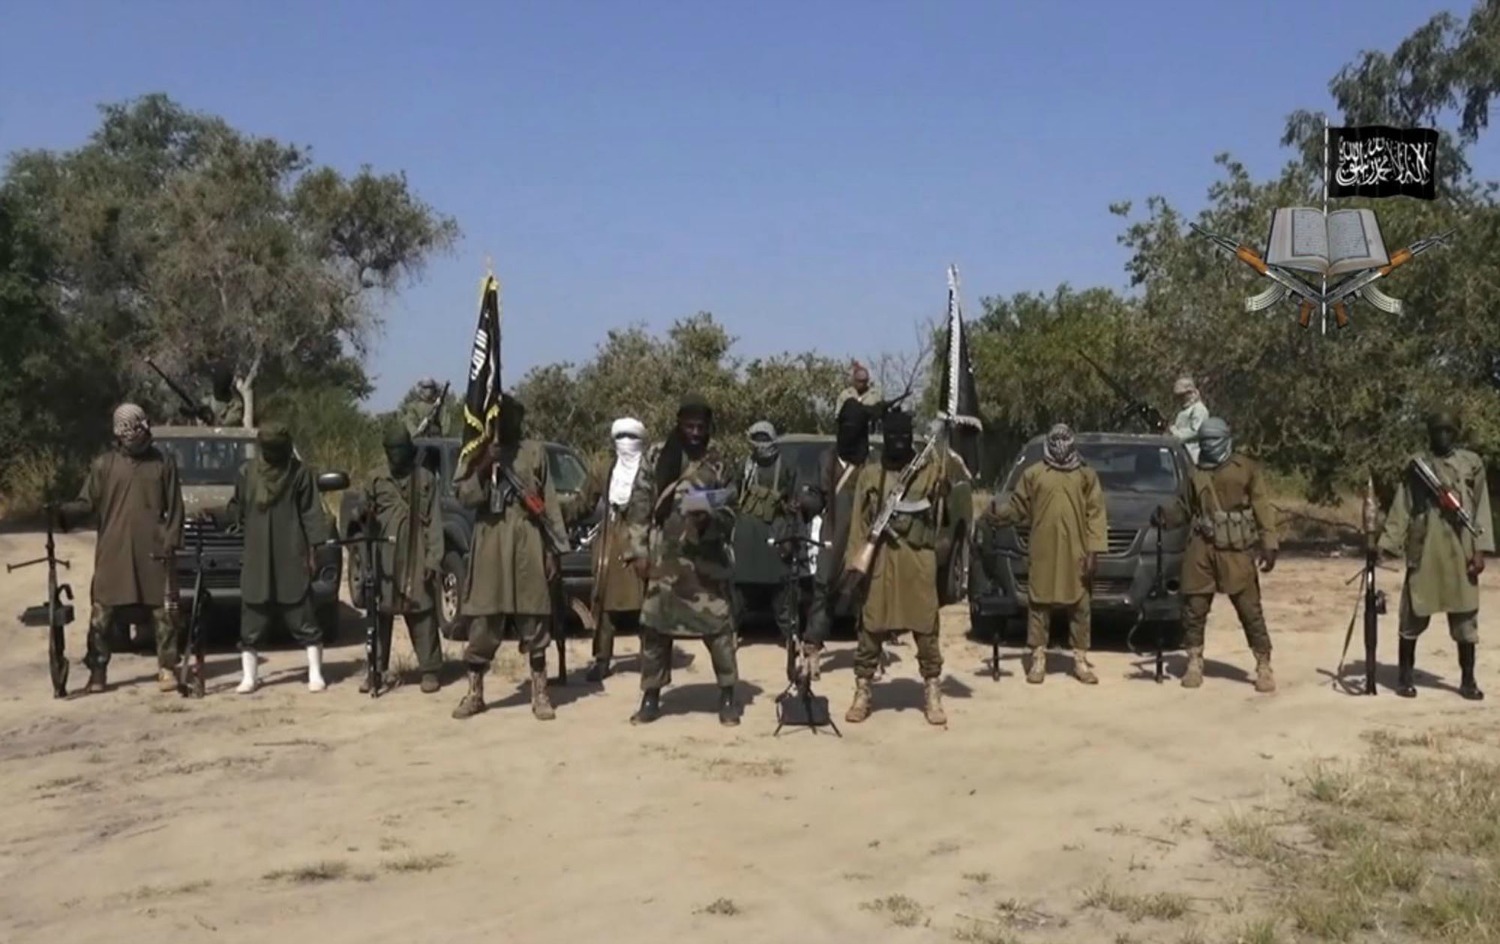 El grupo terrorista Boko Haram tiene nuevo líder, según ISIS